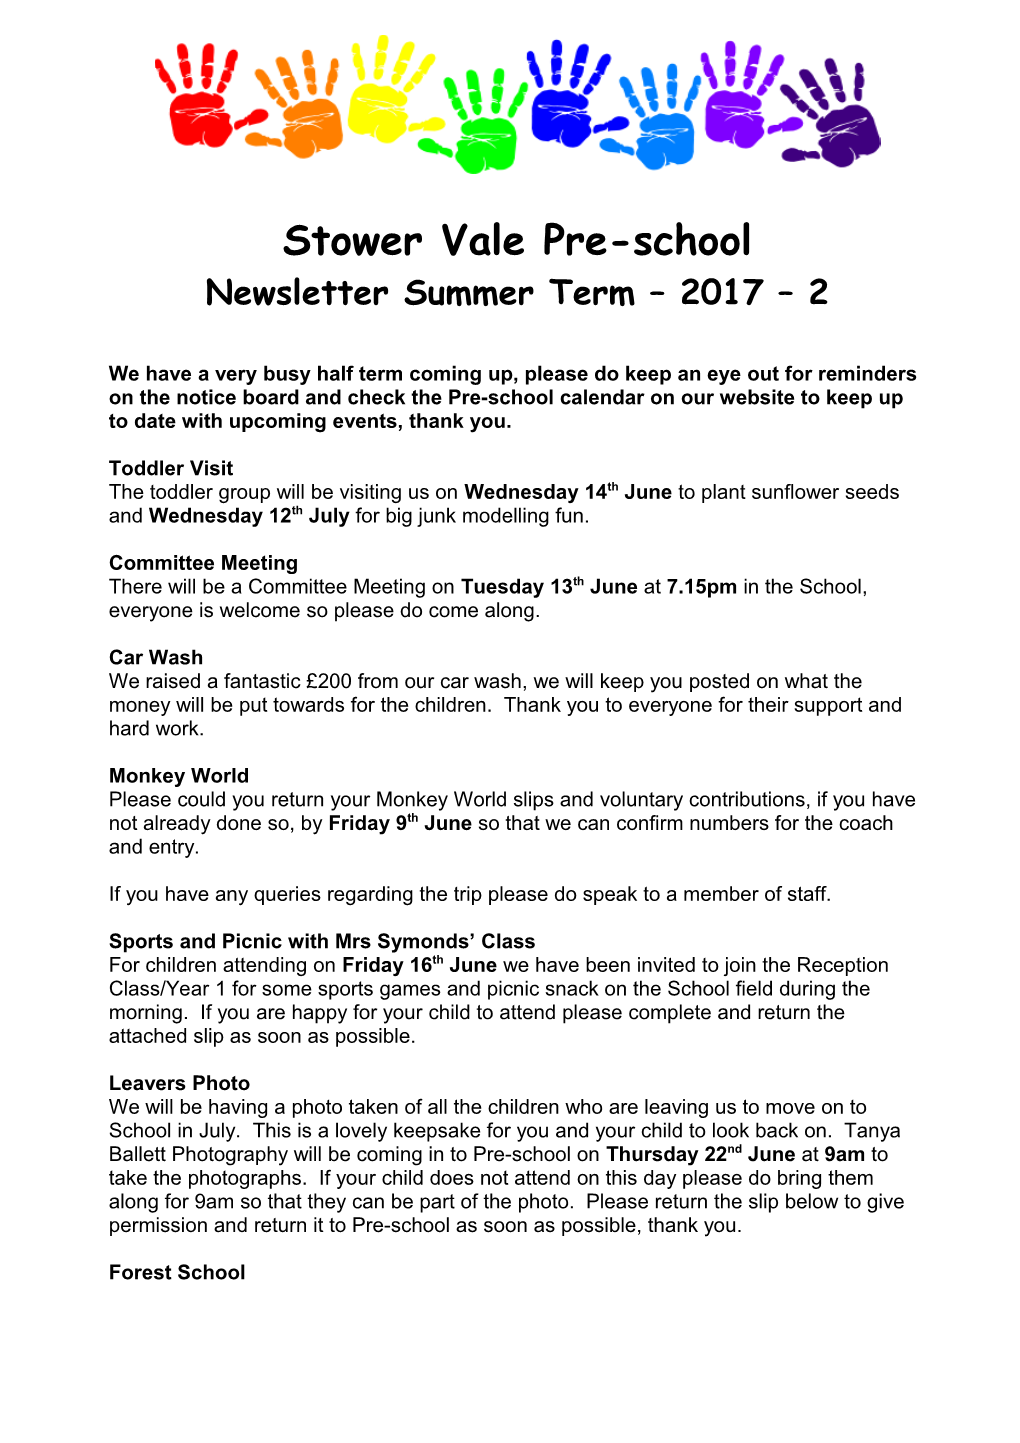 Stower Vale Pre-School